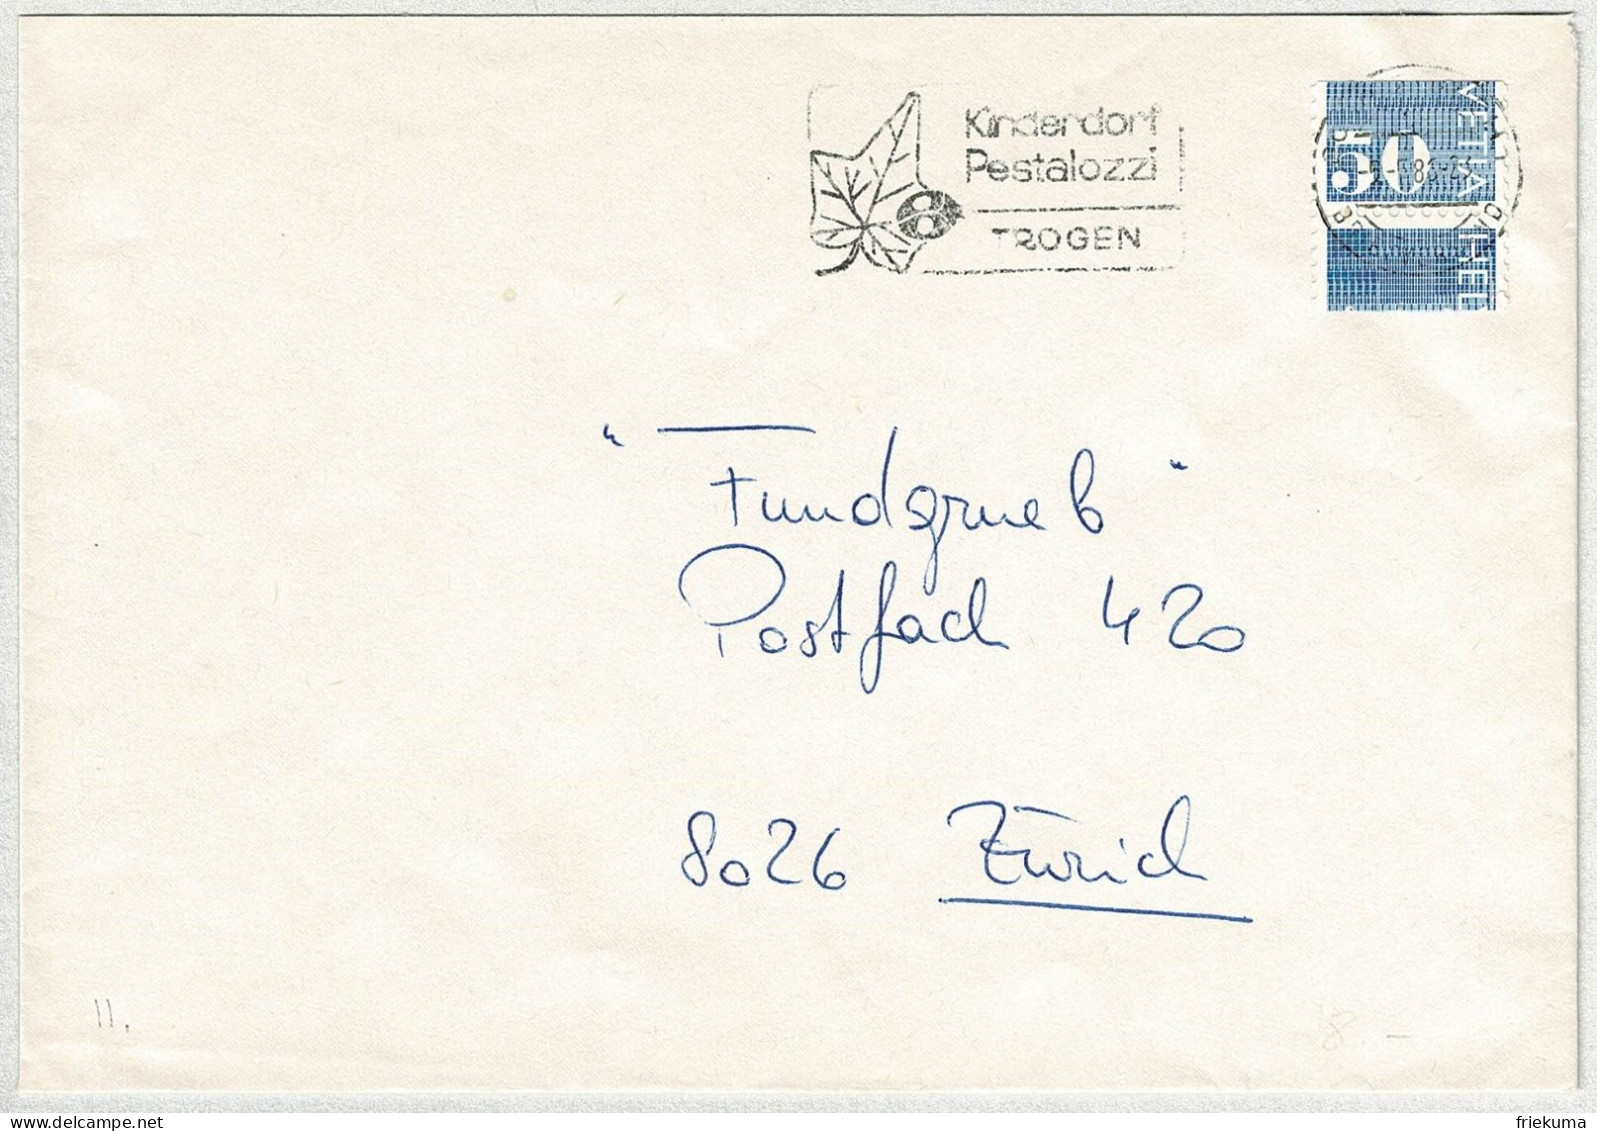 Schweiz 1986, Brief Zürich, Automatenmarke Ziffermarken Verschnitten / Error, Kinderdorf Pestalozzi Trogen, Marienkäfer - Automatenmarken